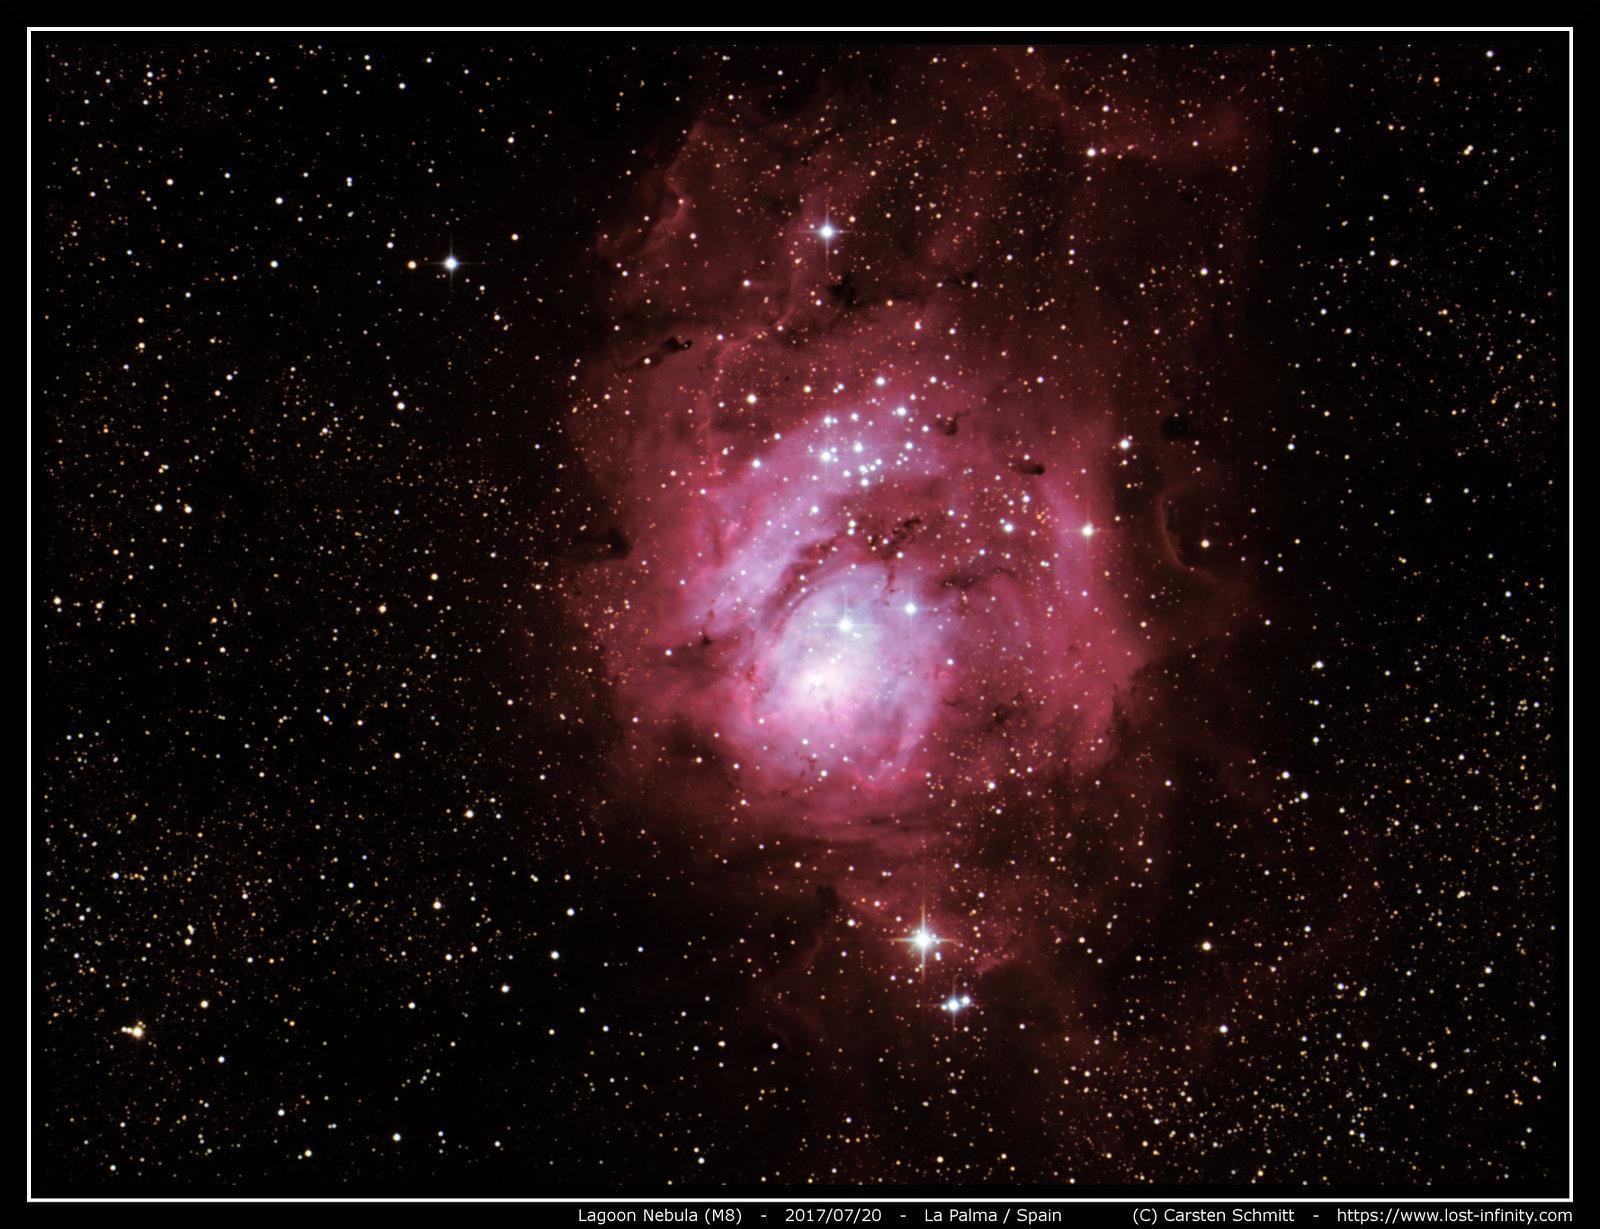 Lagoon nebula (M8) - 2017/07/20